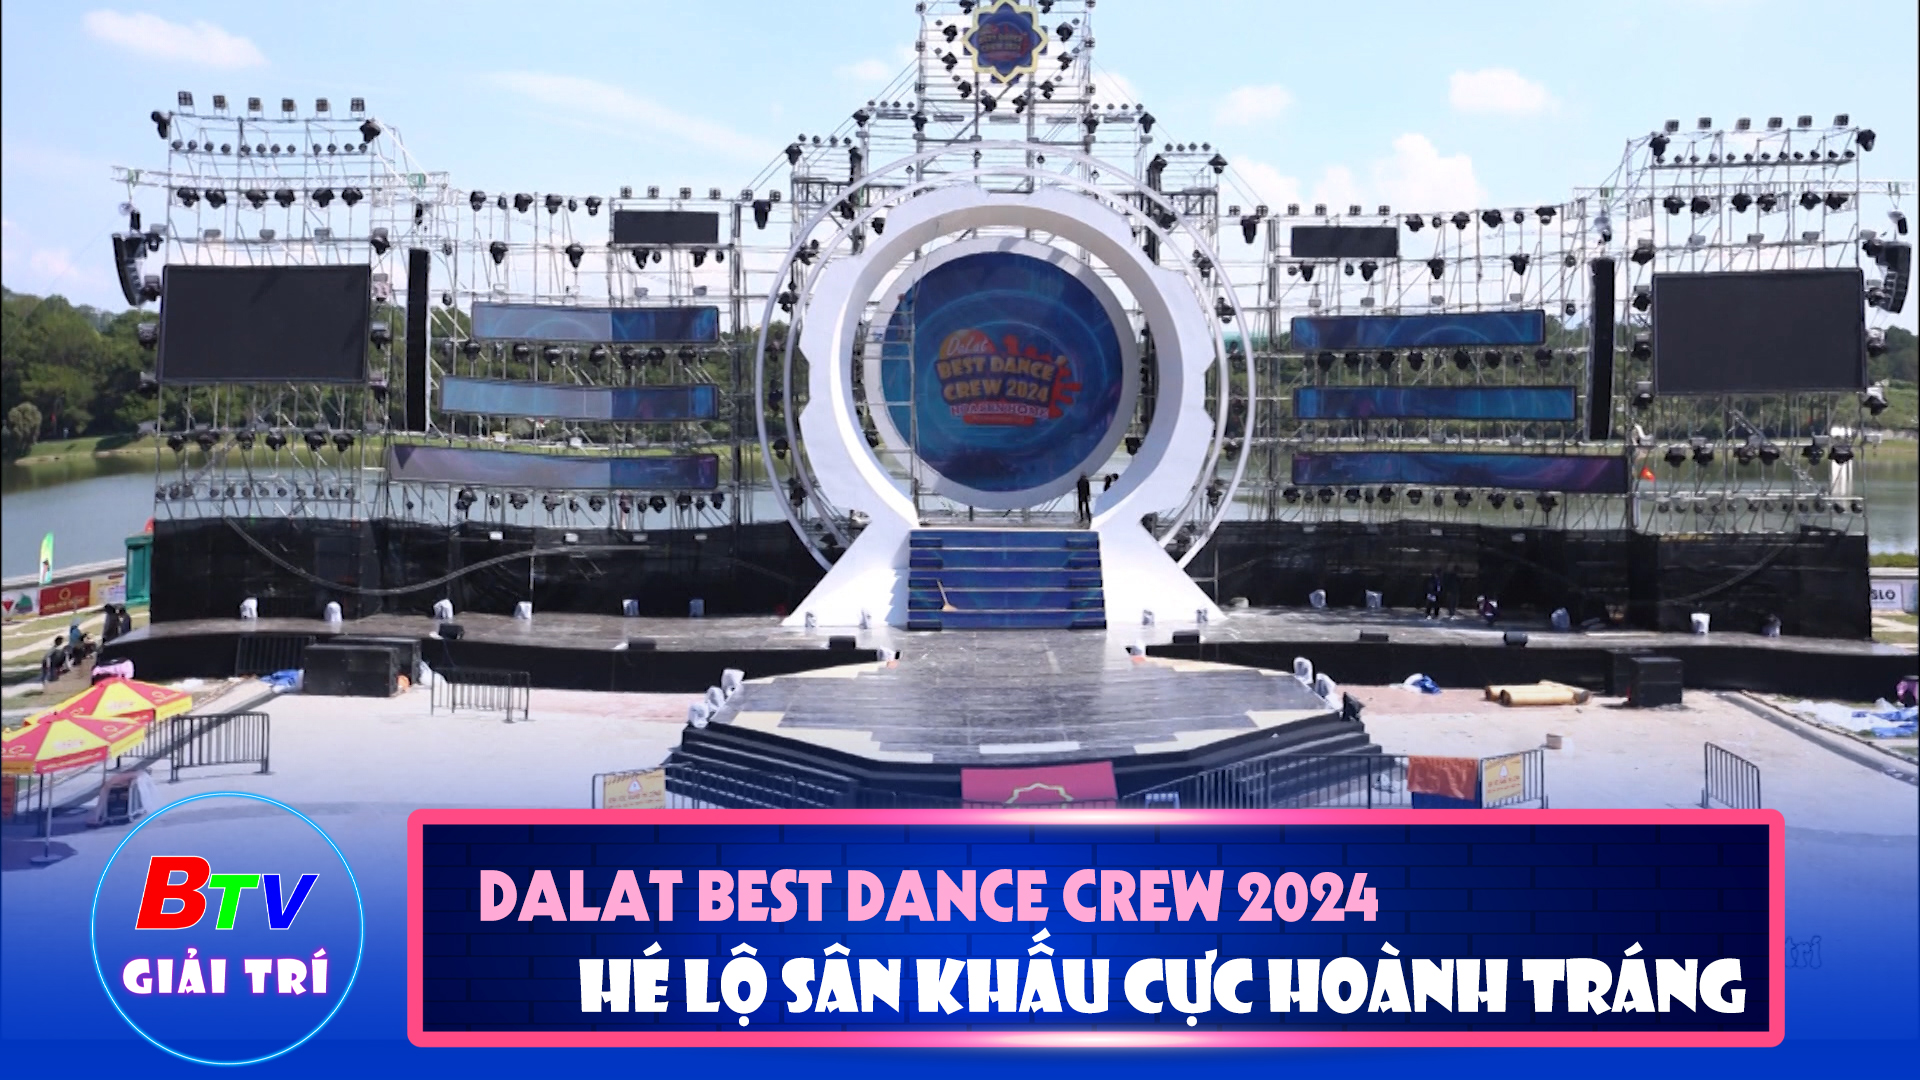 Dalat Best Dance Crew 2024 - Hoa Sen Home International Cup - Hé lộ sân khấu cực hoành tráng